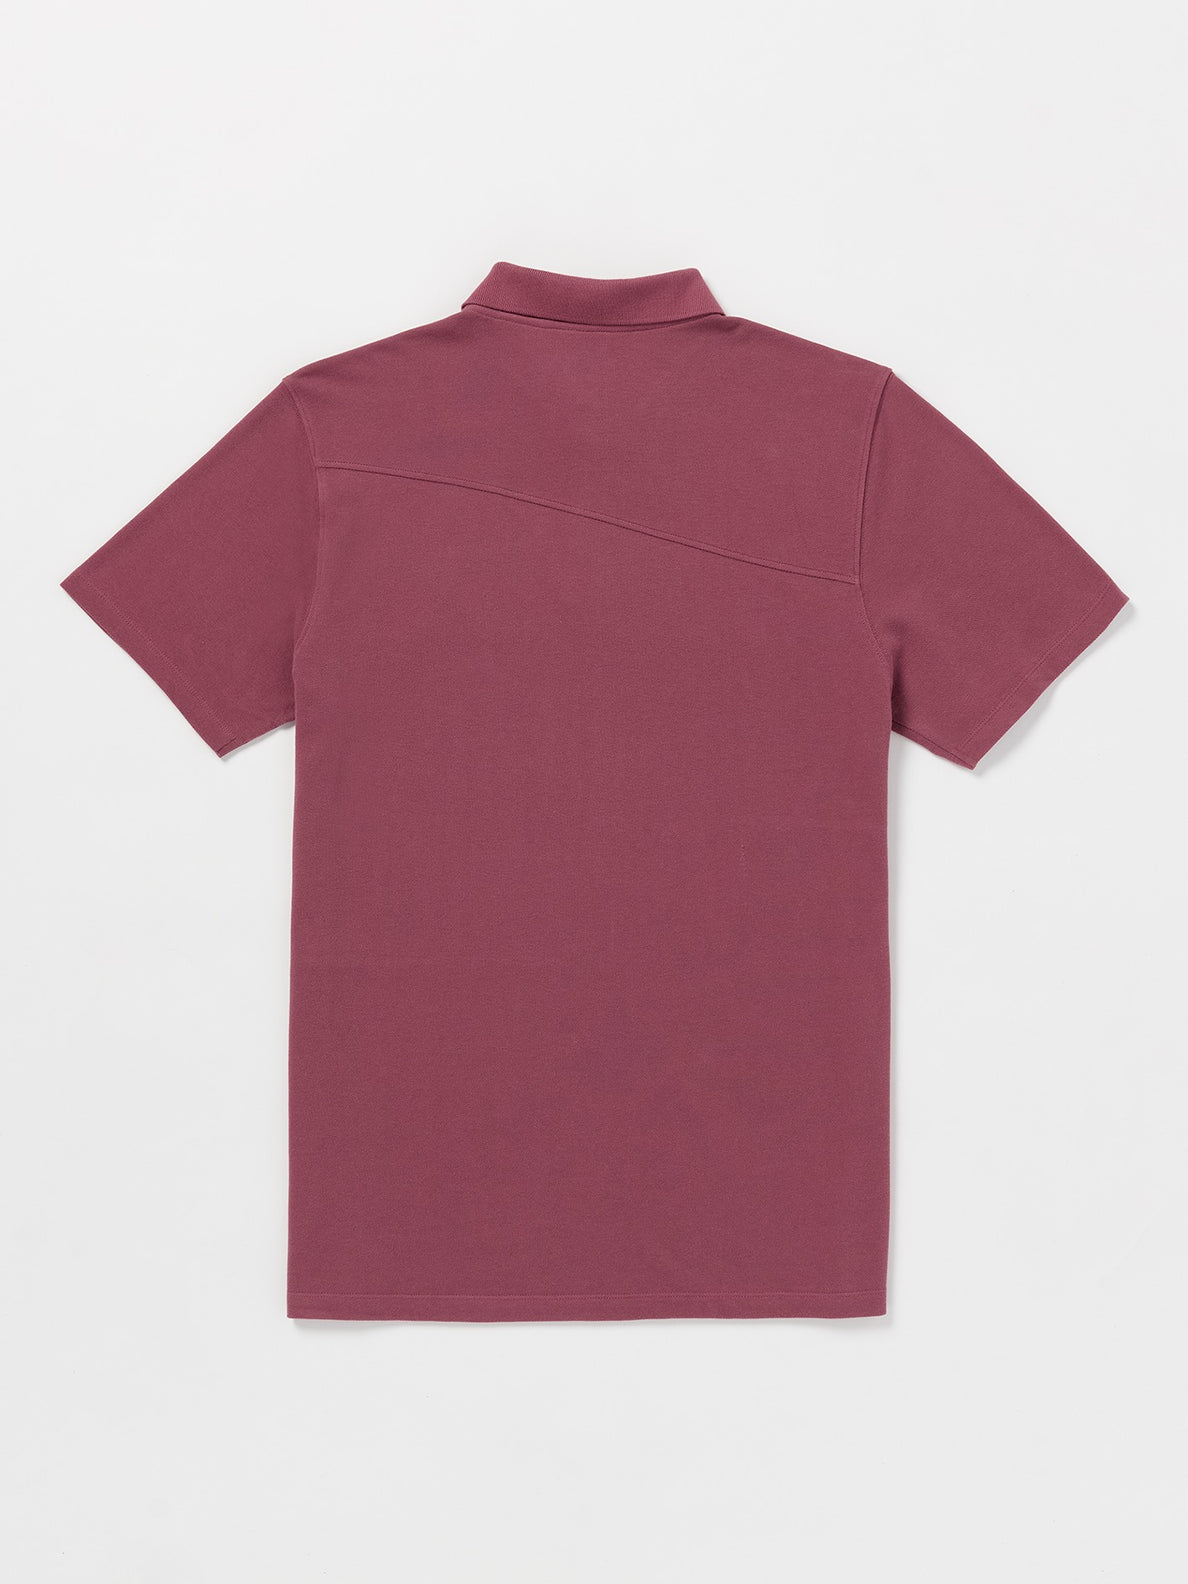 Stoney Baloney Polo Short Sleeve Shirt - Oxblood